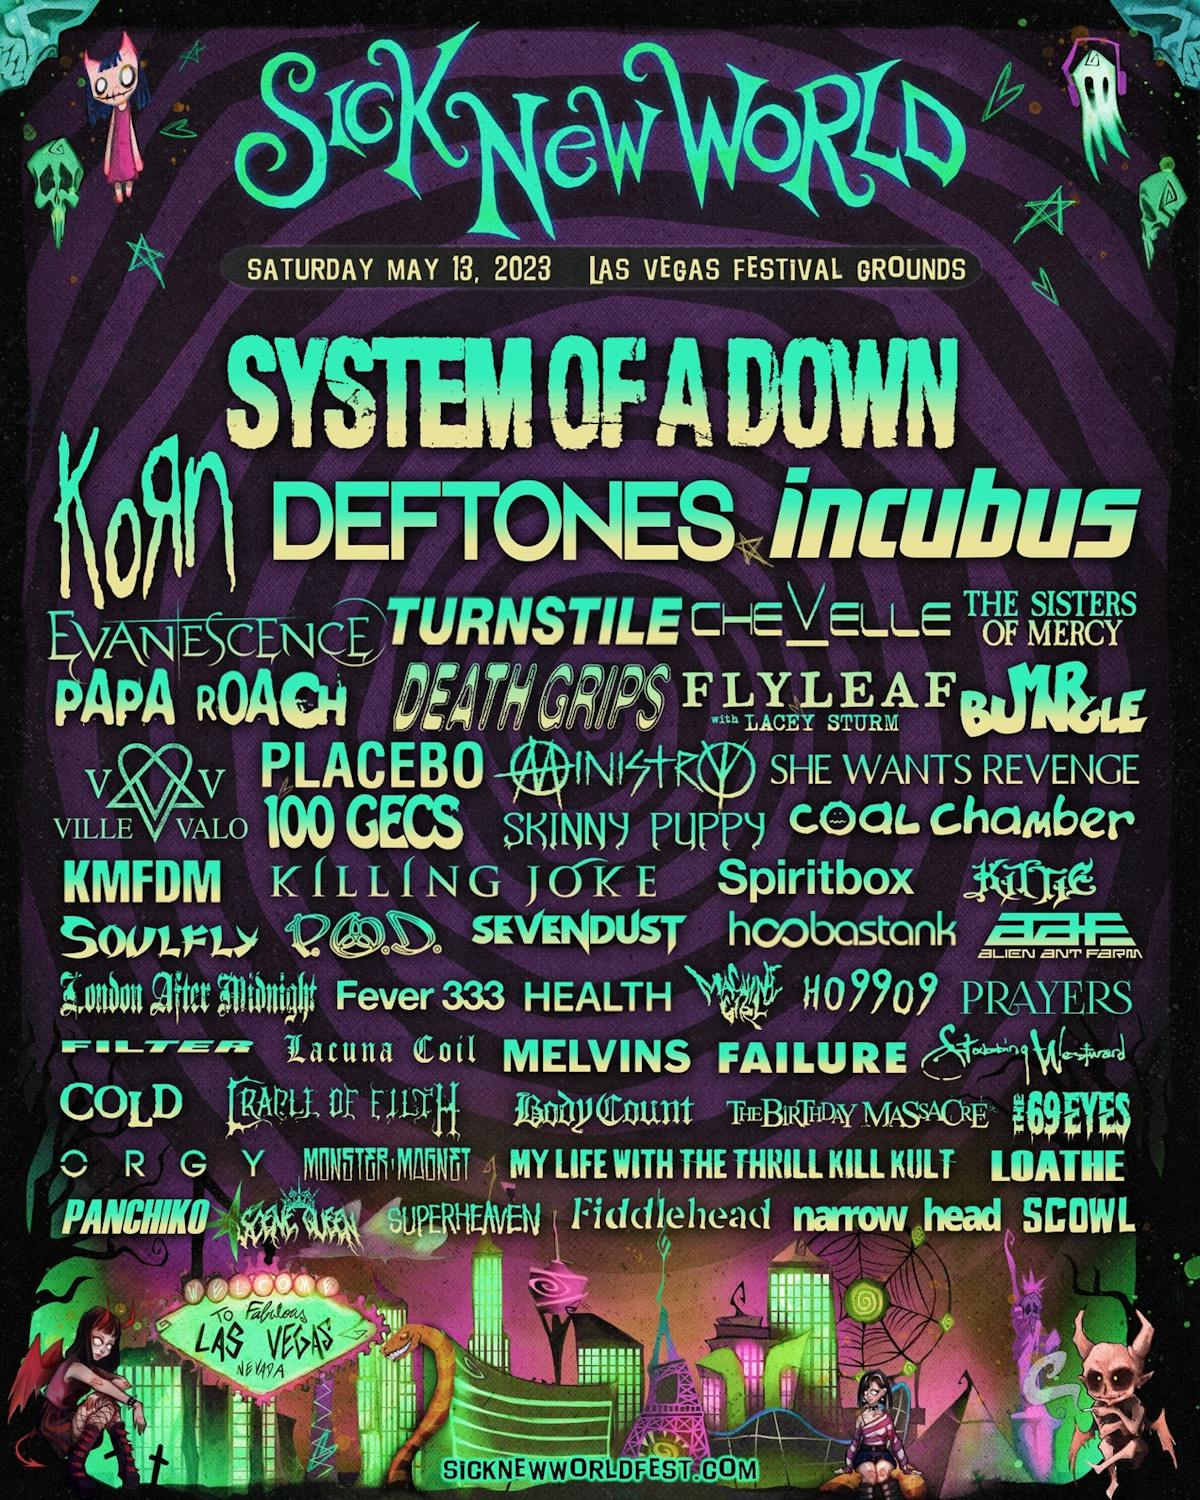 Sick-New-World-festival-Las-Vegas-2023-poster.jpg